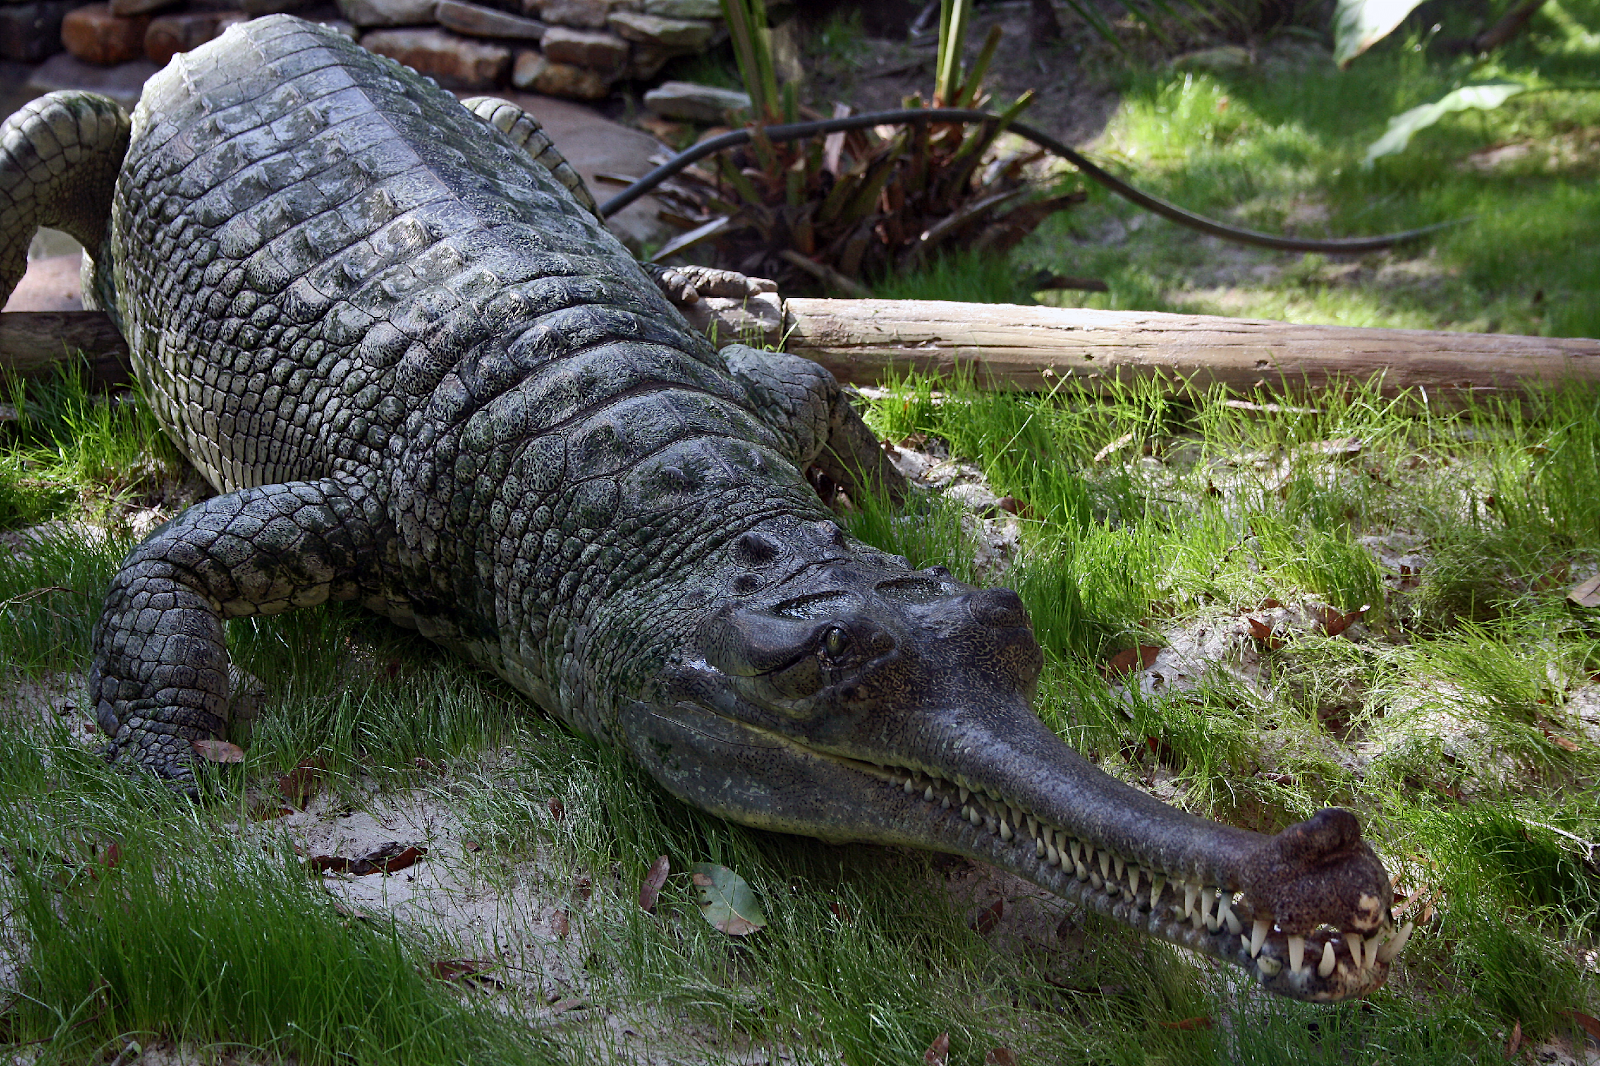 Crocodilo com a boca aberta

Descrição gerada automaticamente